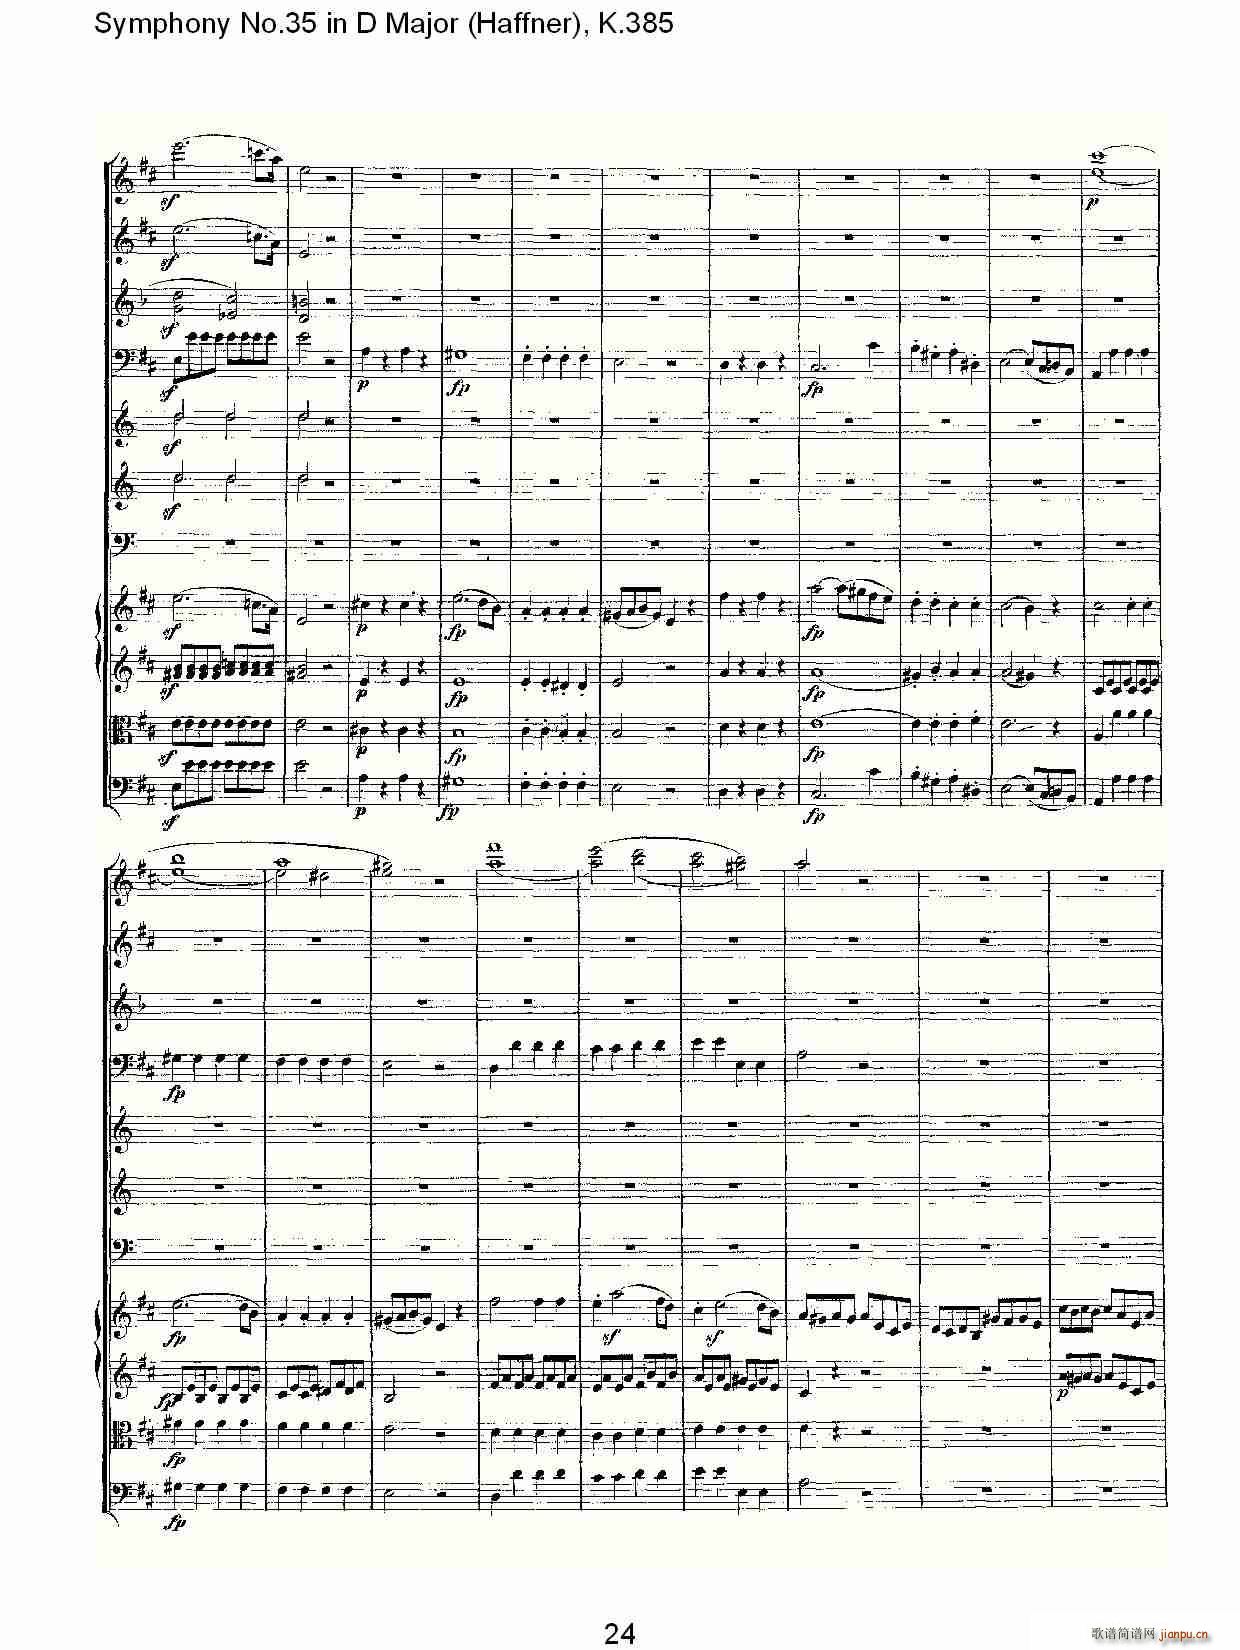 Symphony No.35 in D Major, K.385(ʮּ)24